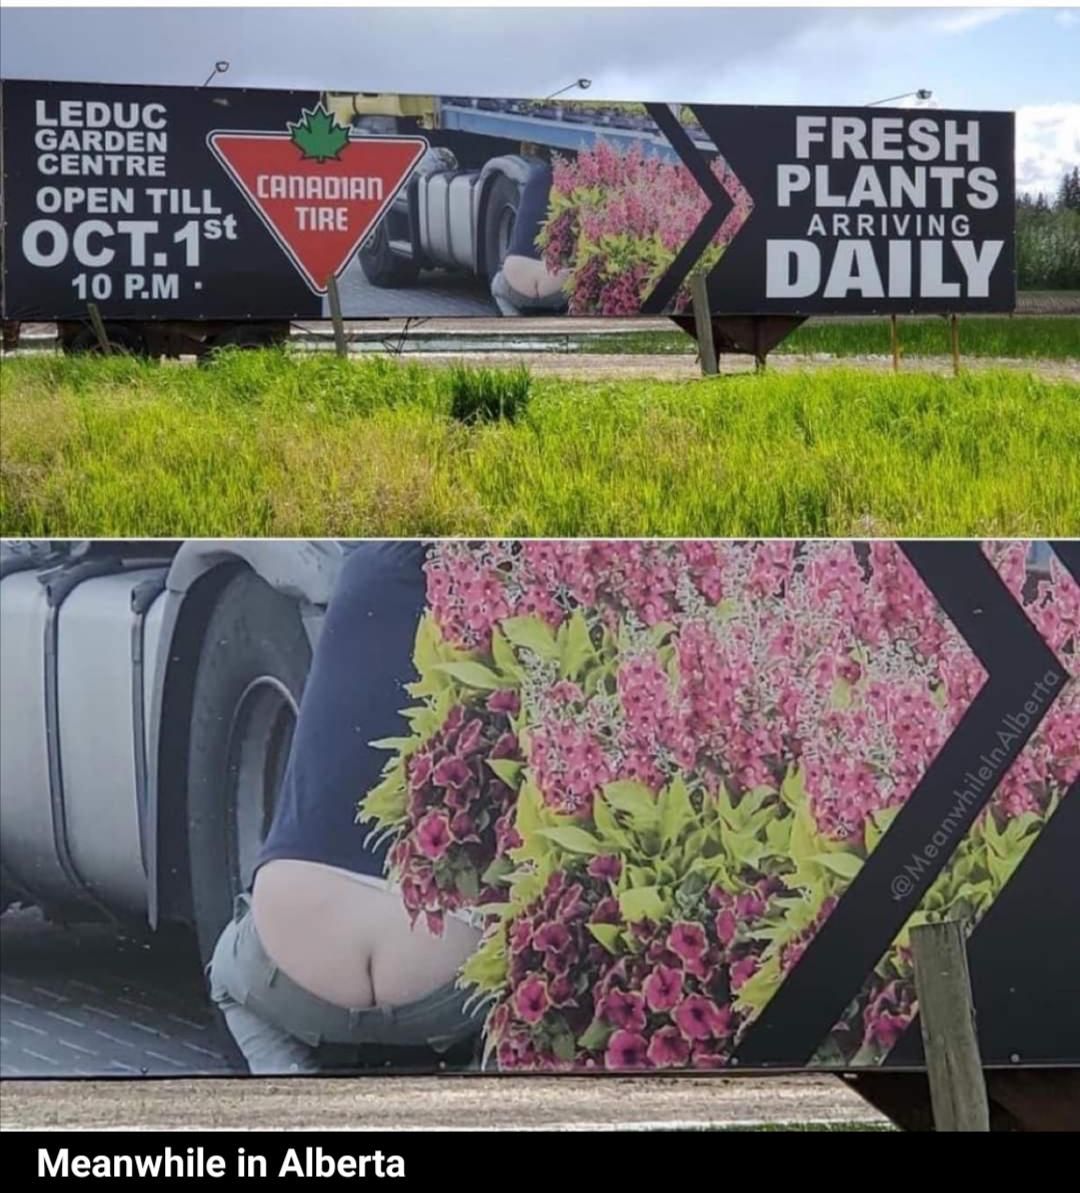 An actual Canadian Tire billboard in Leduc Alberta